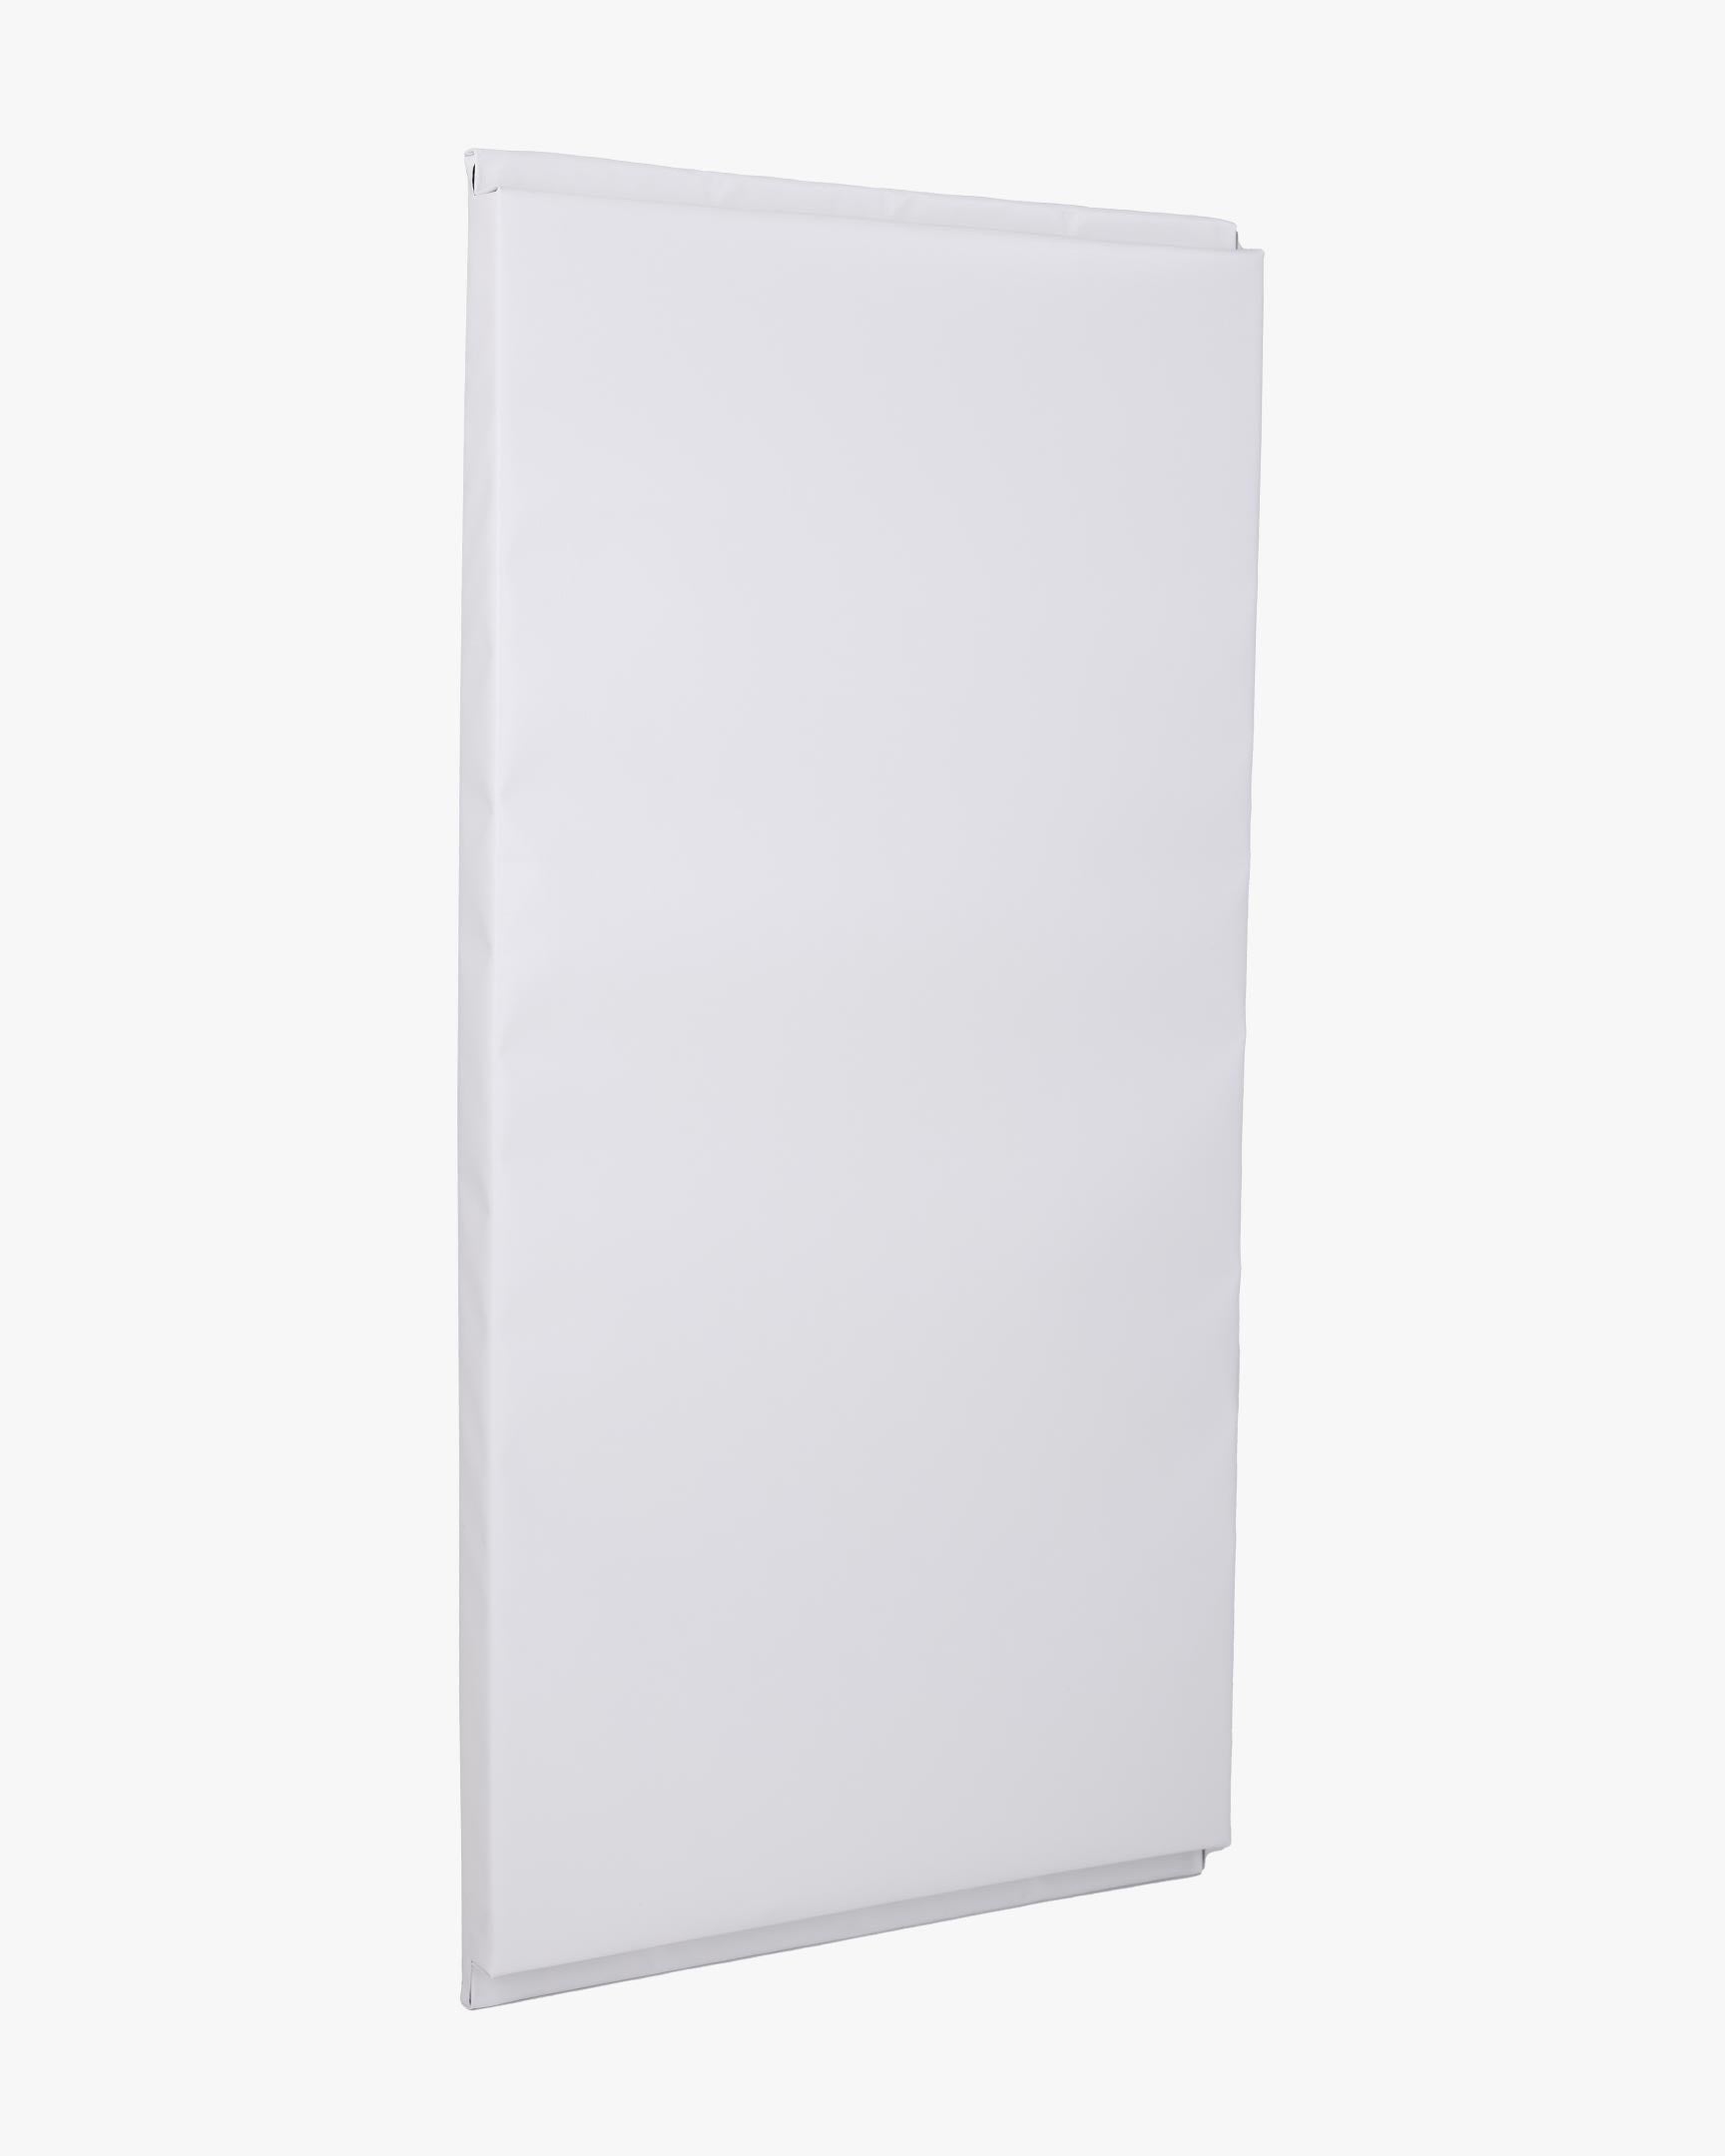 Wall Pad 2' x 4' White